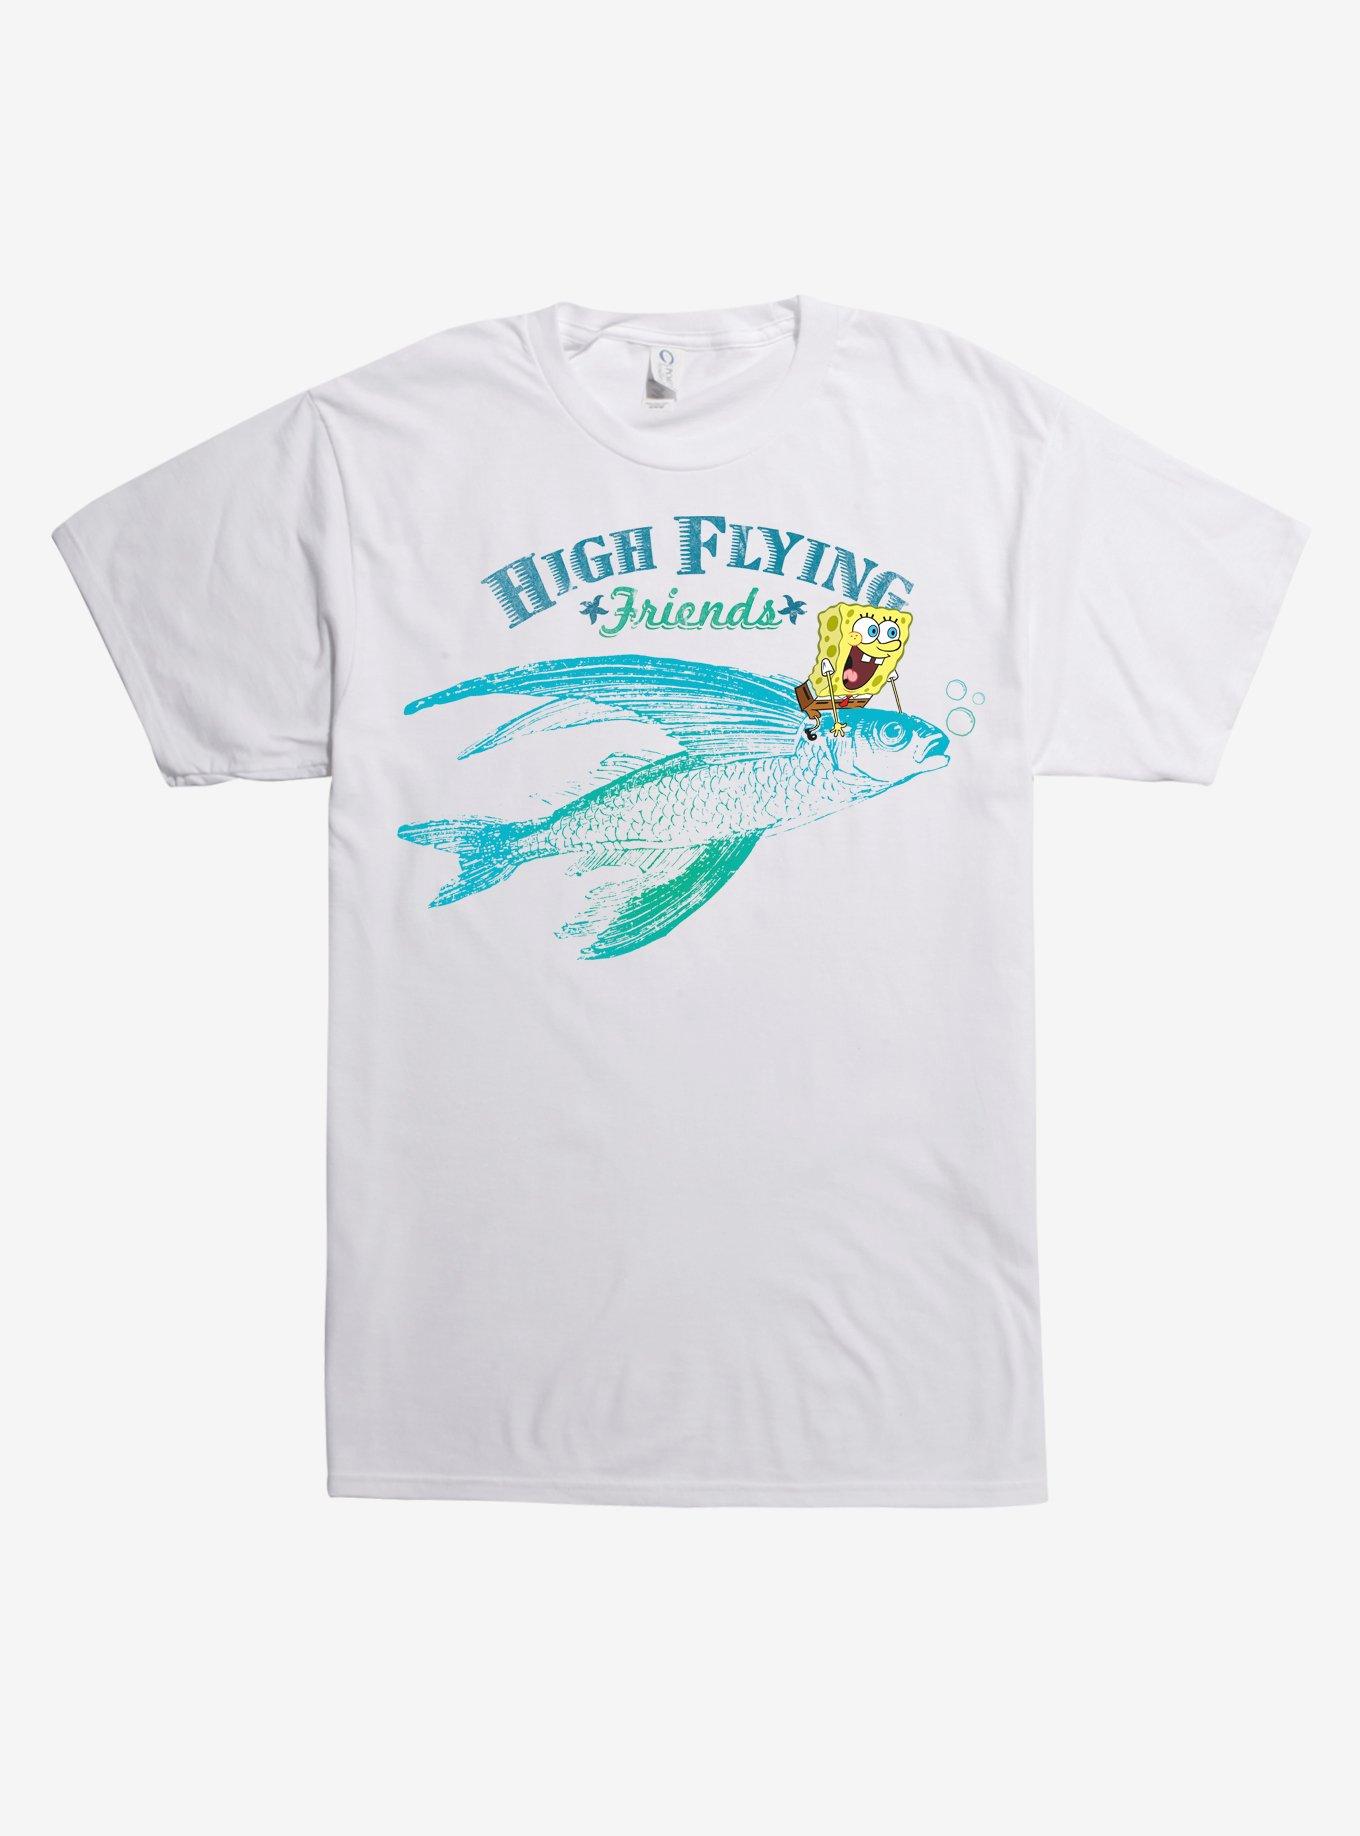 SpongeBob SquarePants High Flying Friends T-Shirt | Hot Topic